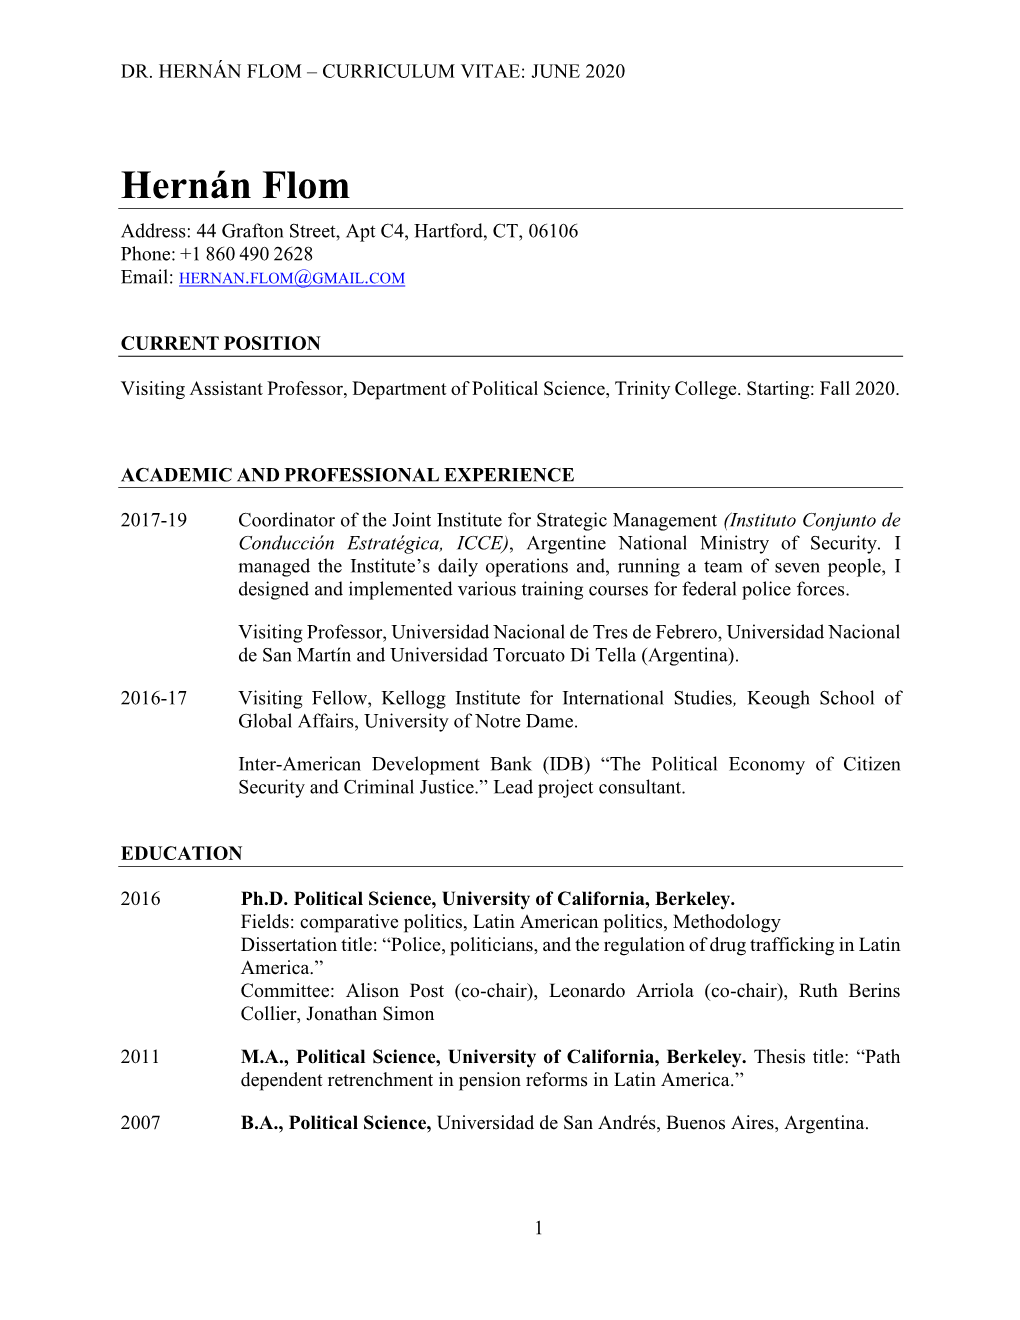 Hernán Flom – Curriculum Vitae: June 2020